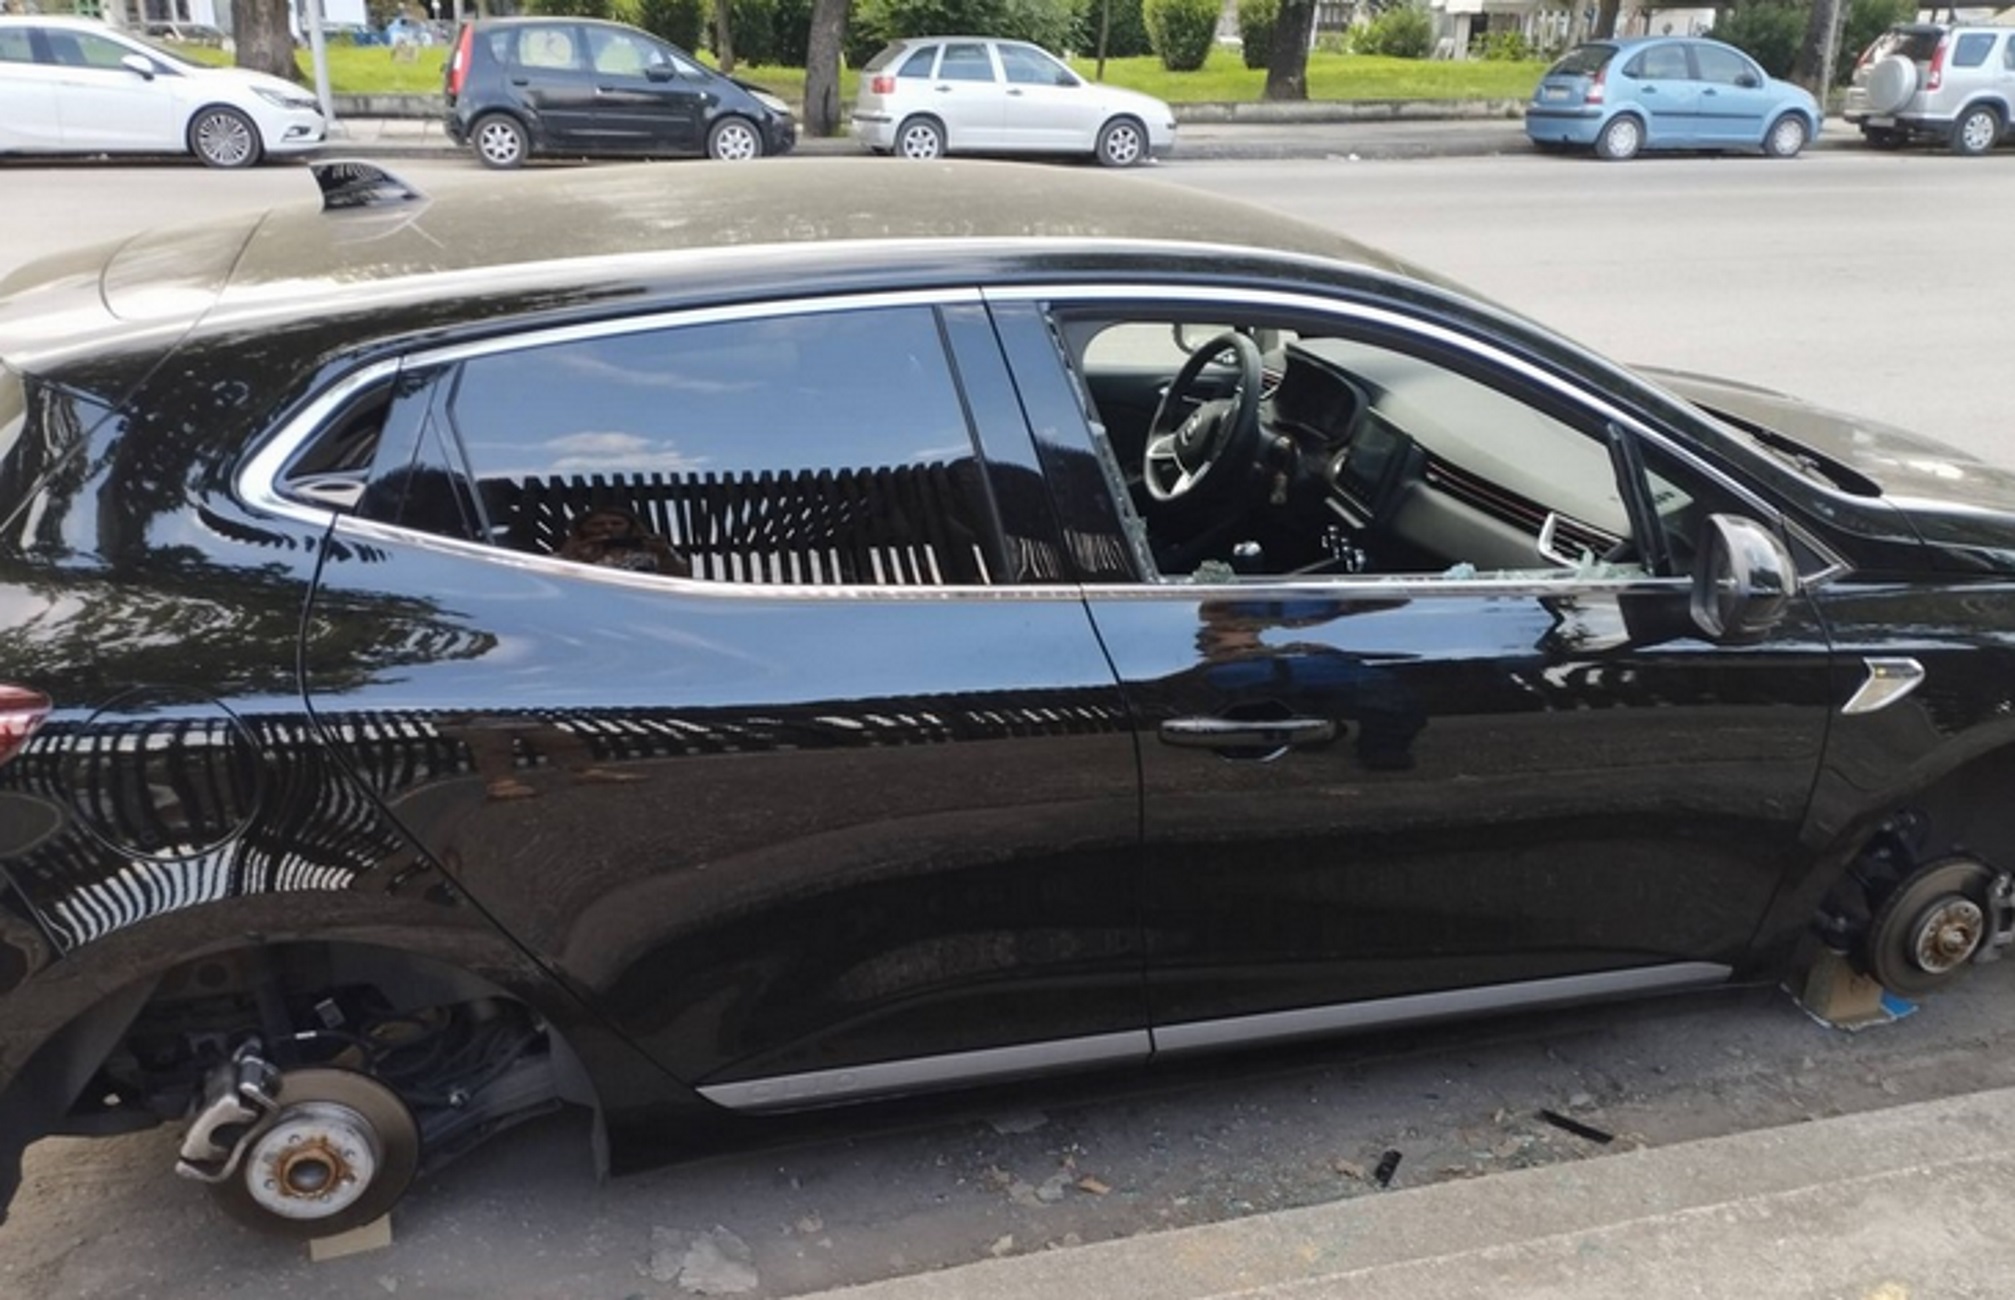 Θεσσαλονίκη: Βούτηξαν και τα 4 λάστιχα του αυτοκινήτου – Αυτοψία στη λεωφόρο Μεγάλου Αλεξάνδρου